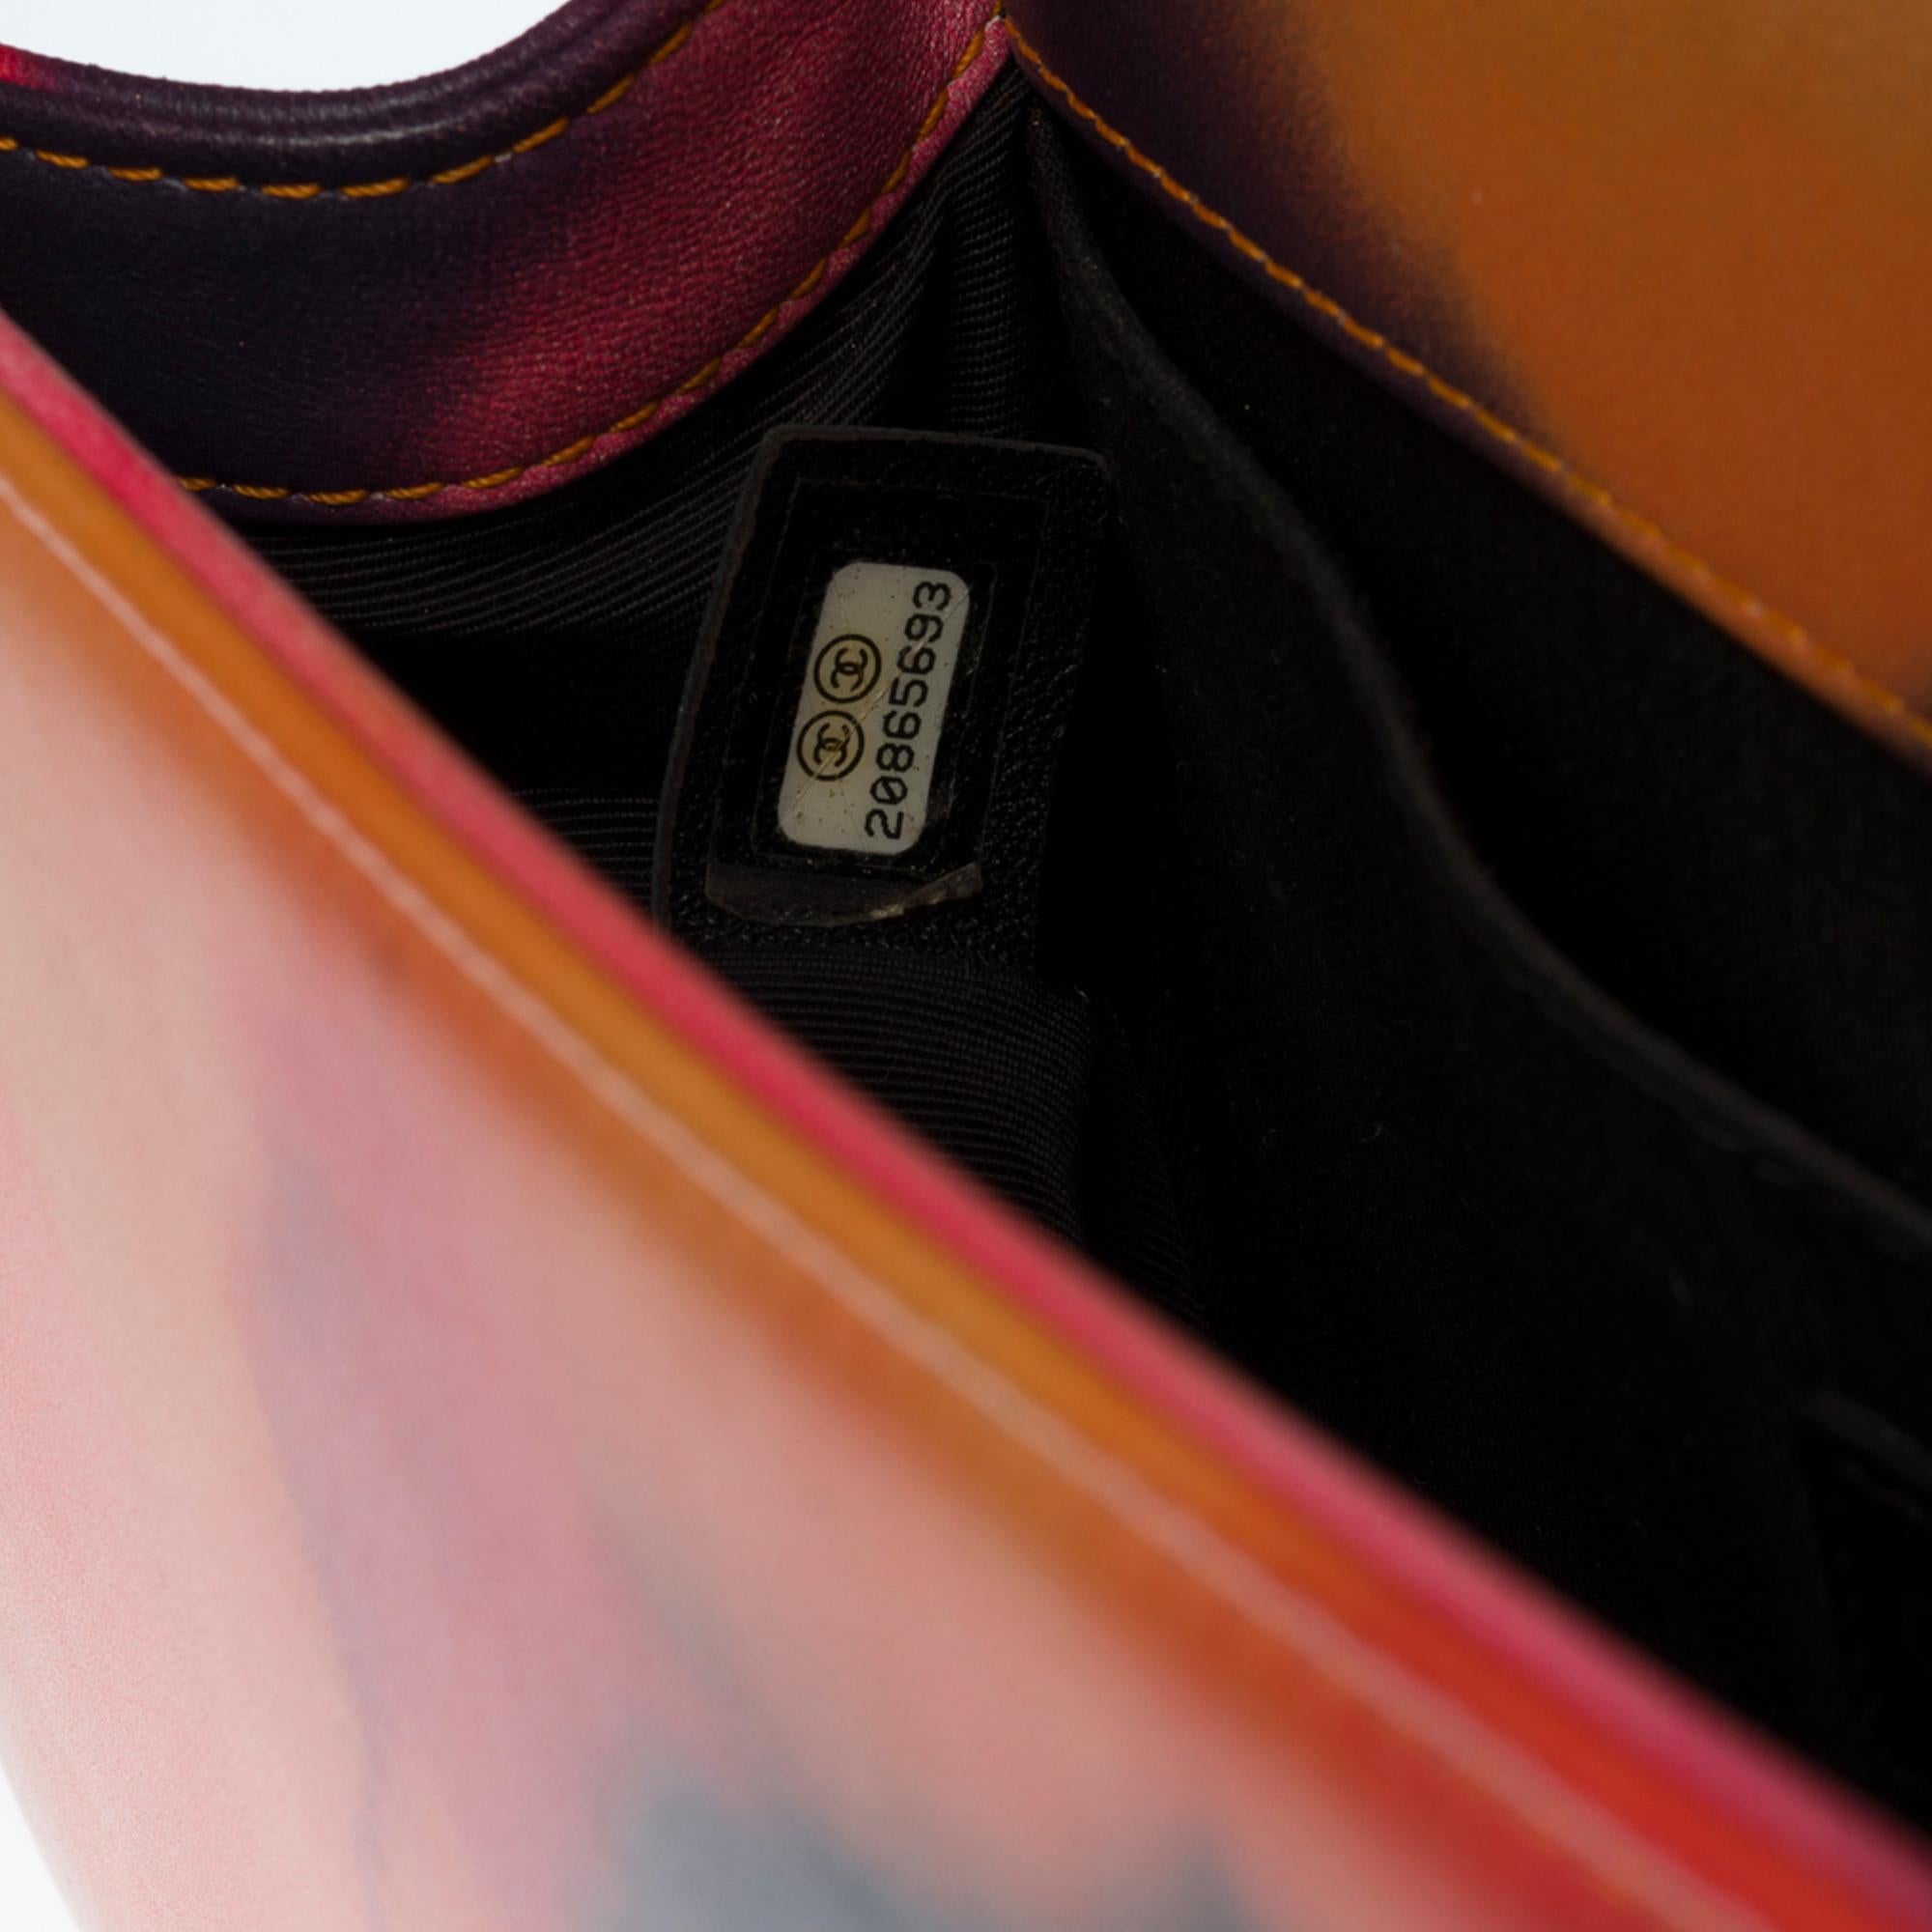 Power Flower Chanel Boy Old medium shoulder bag in multicolor leather, SHW 2